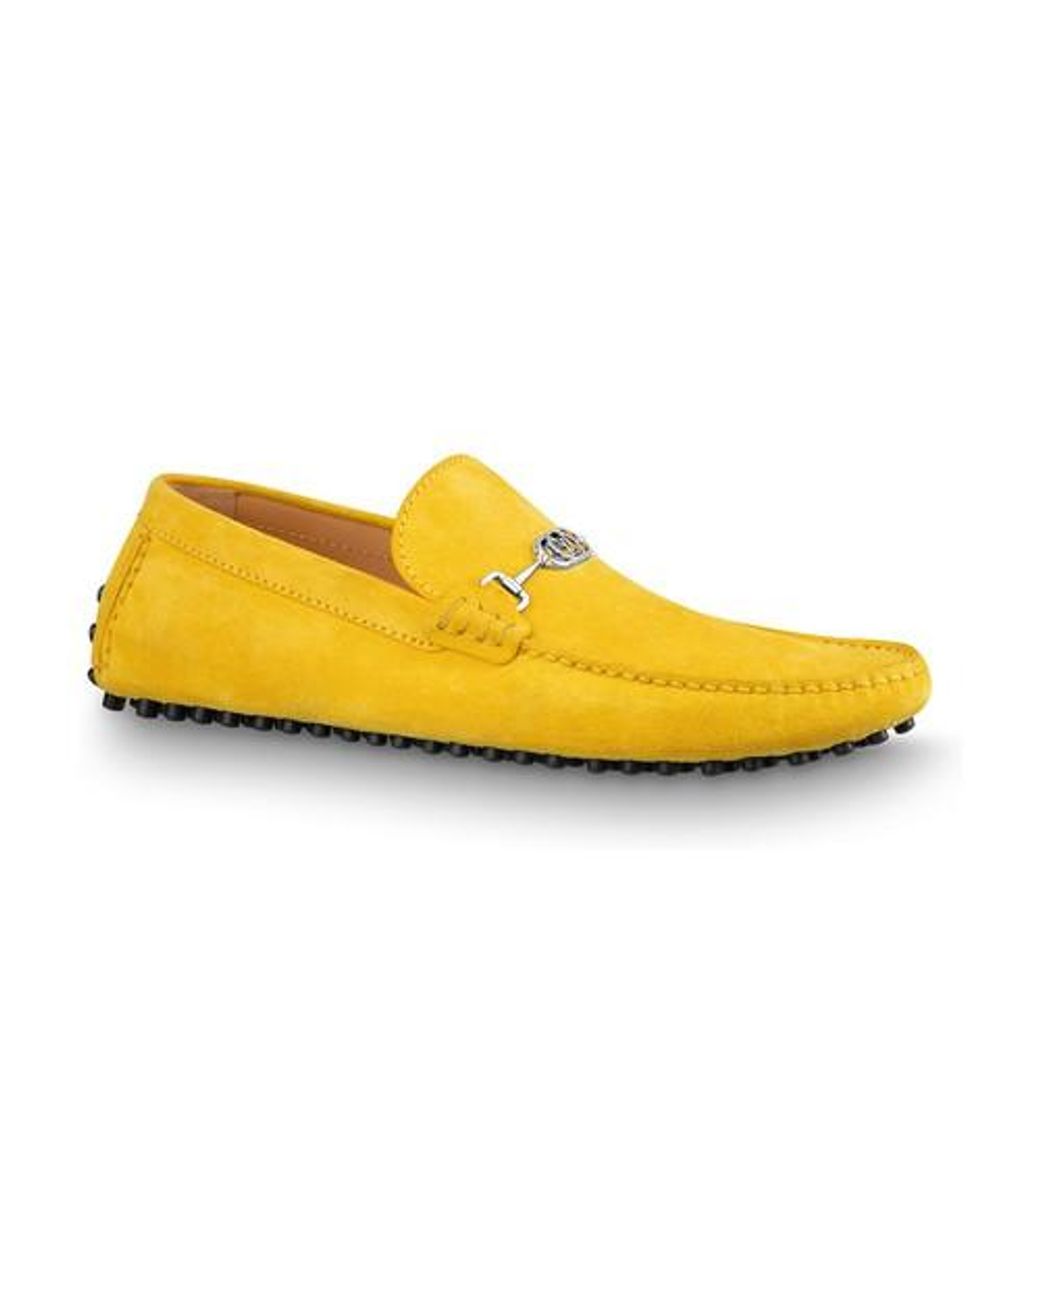 Louis Vuitton lv man shoes leather loafers  Lv men shoes, Shoes mens,  Dress shoes men